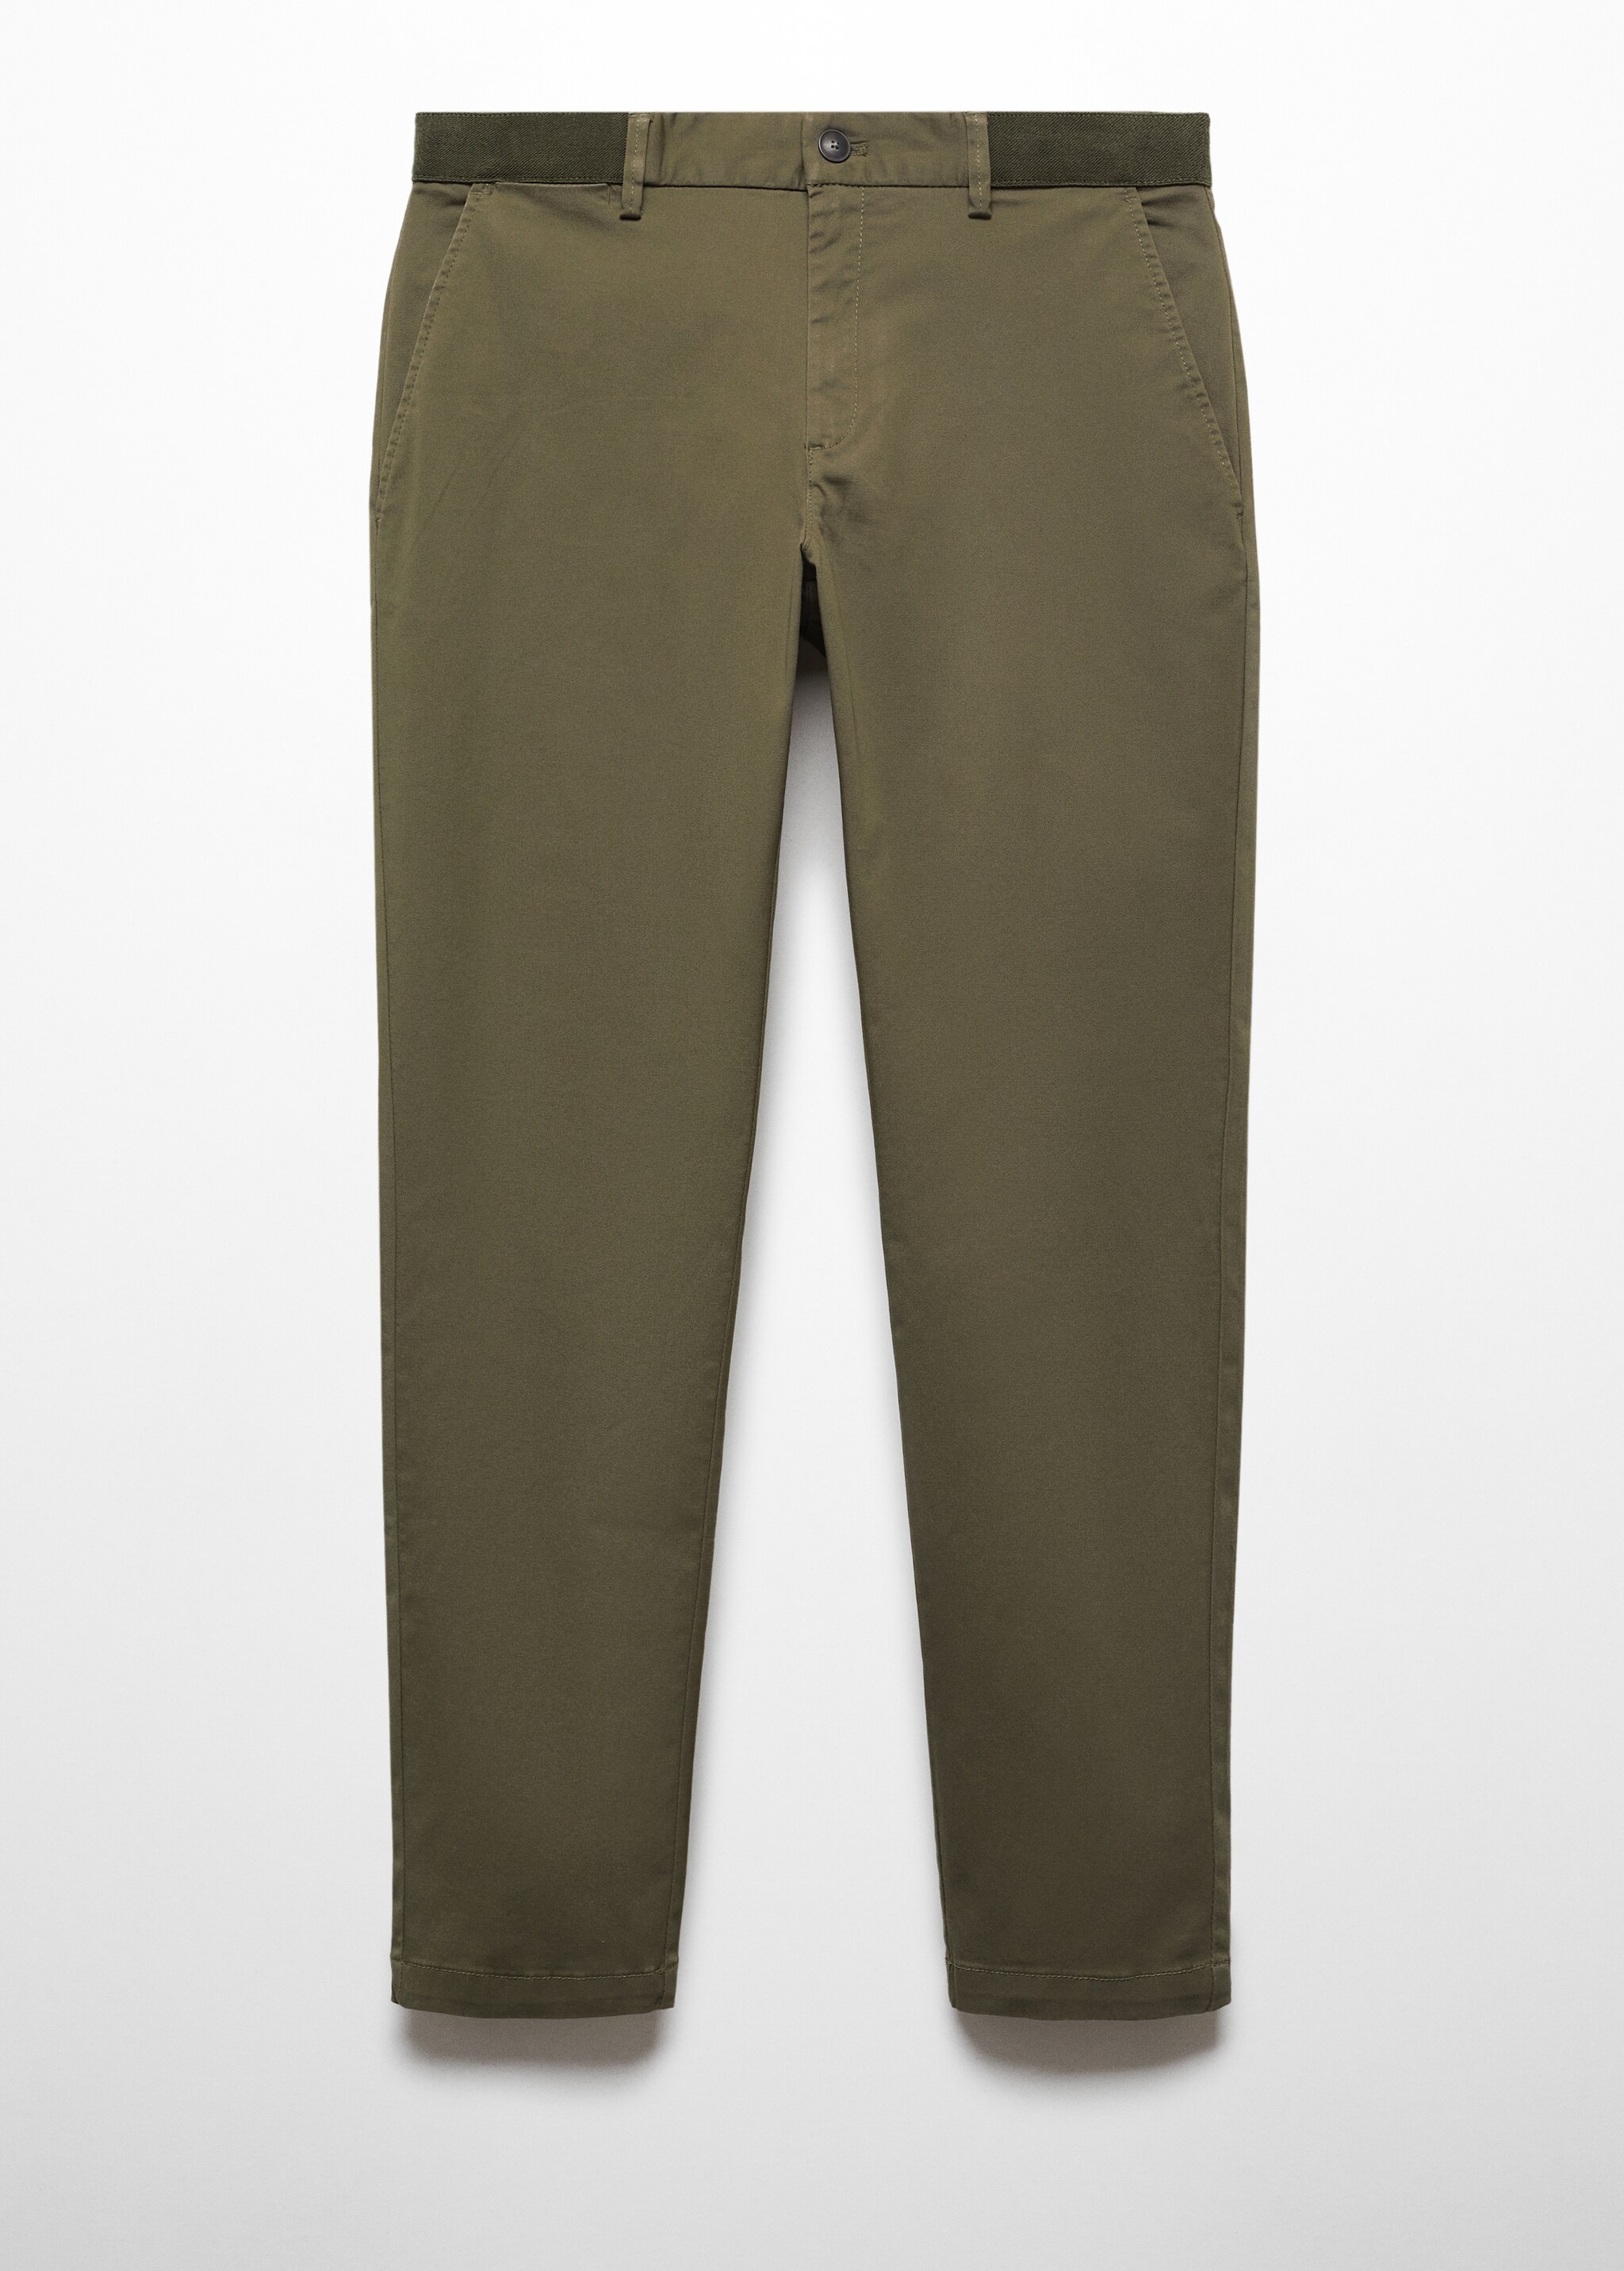 Укороченные брюки tapered из хлопка - Изделие без модели